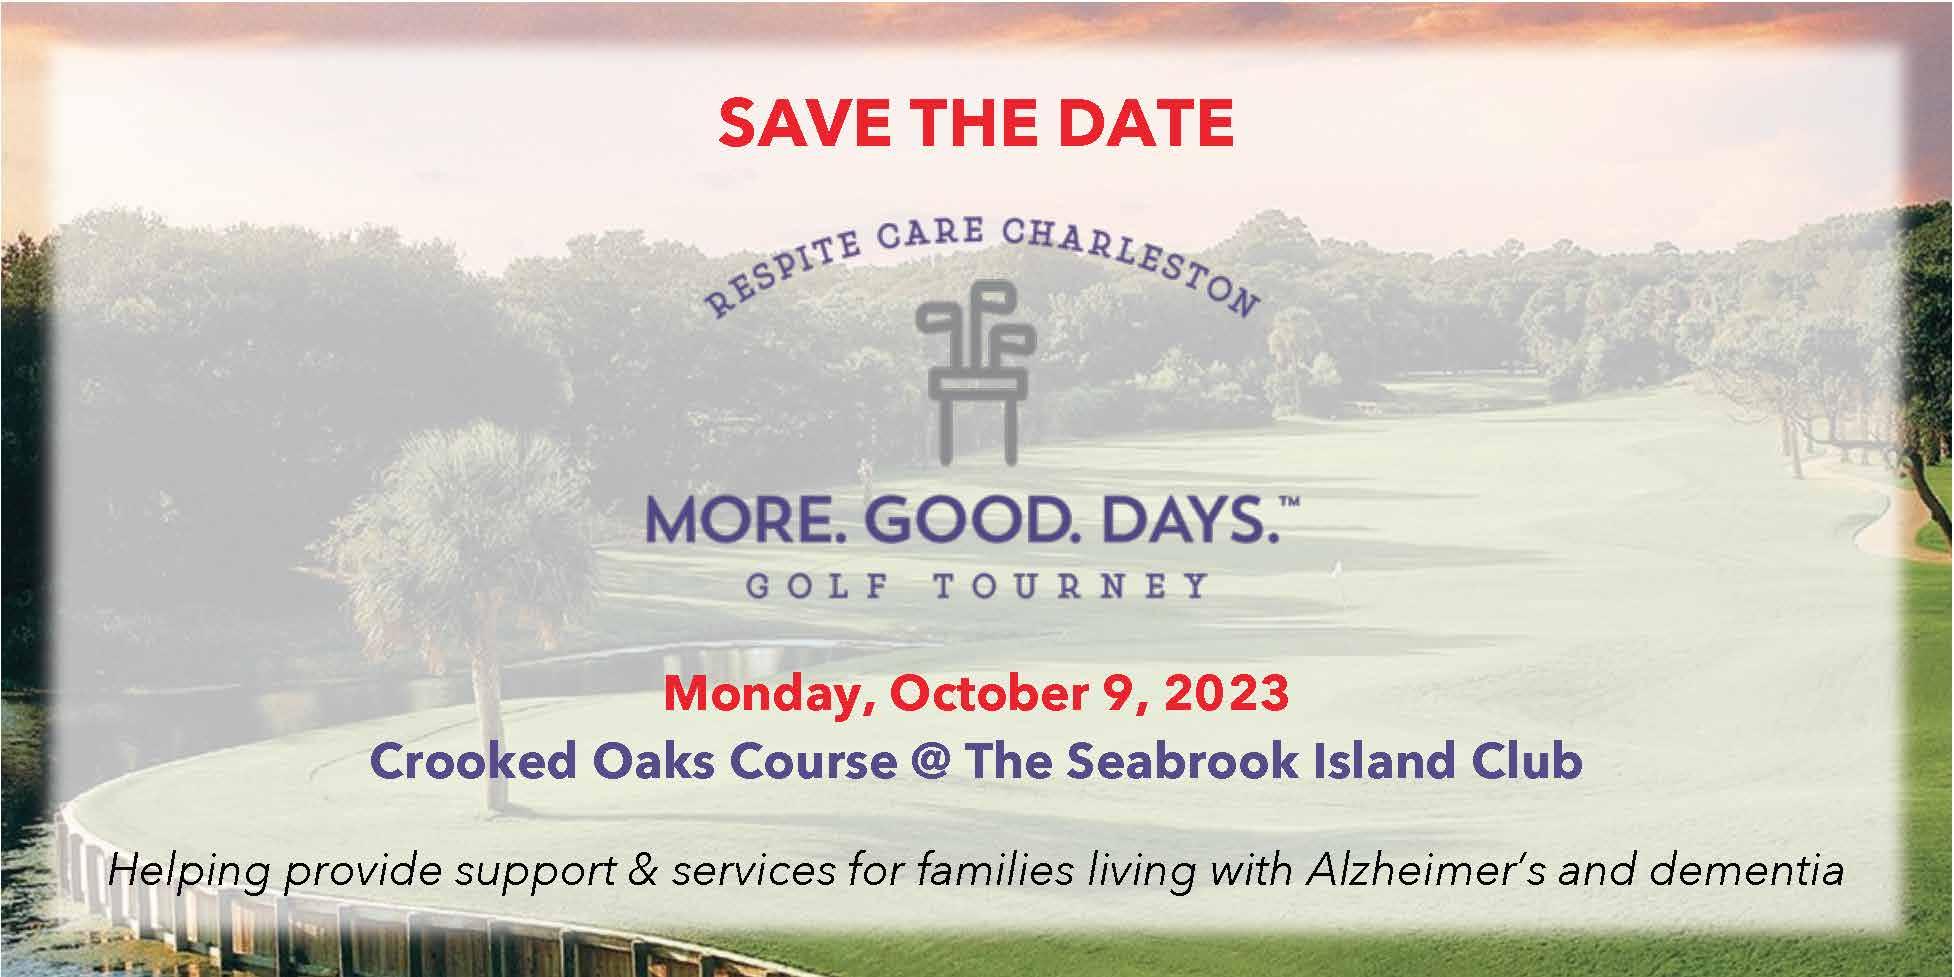 2023 Golf Tournament for Alzheimer's & Dementia